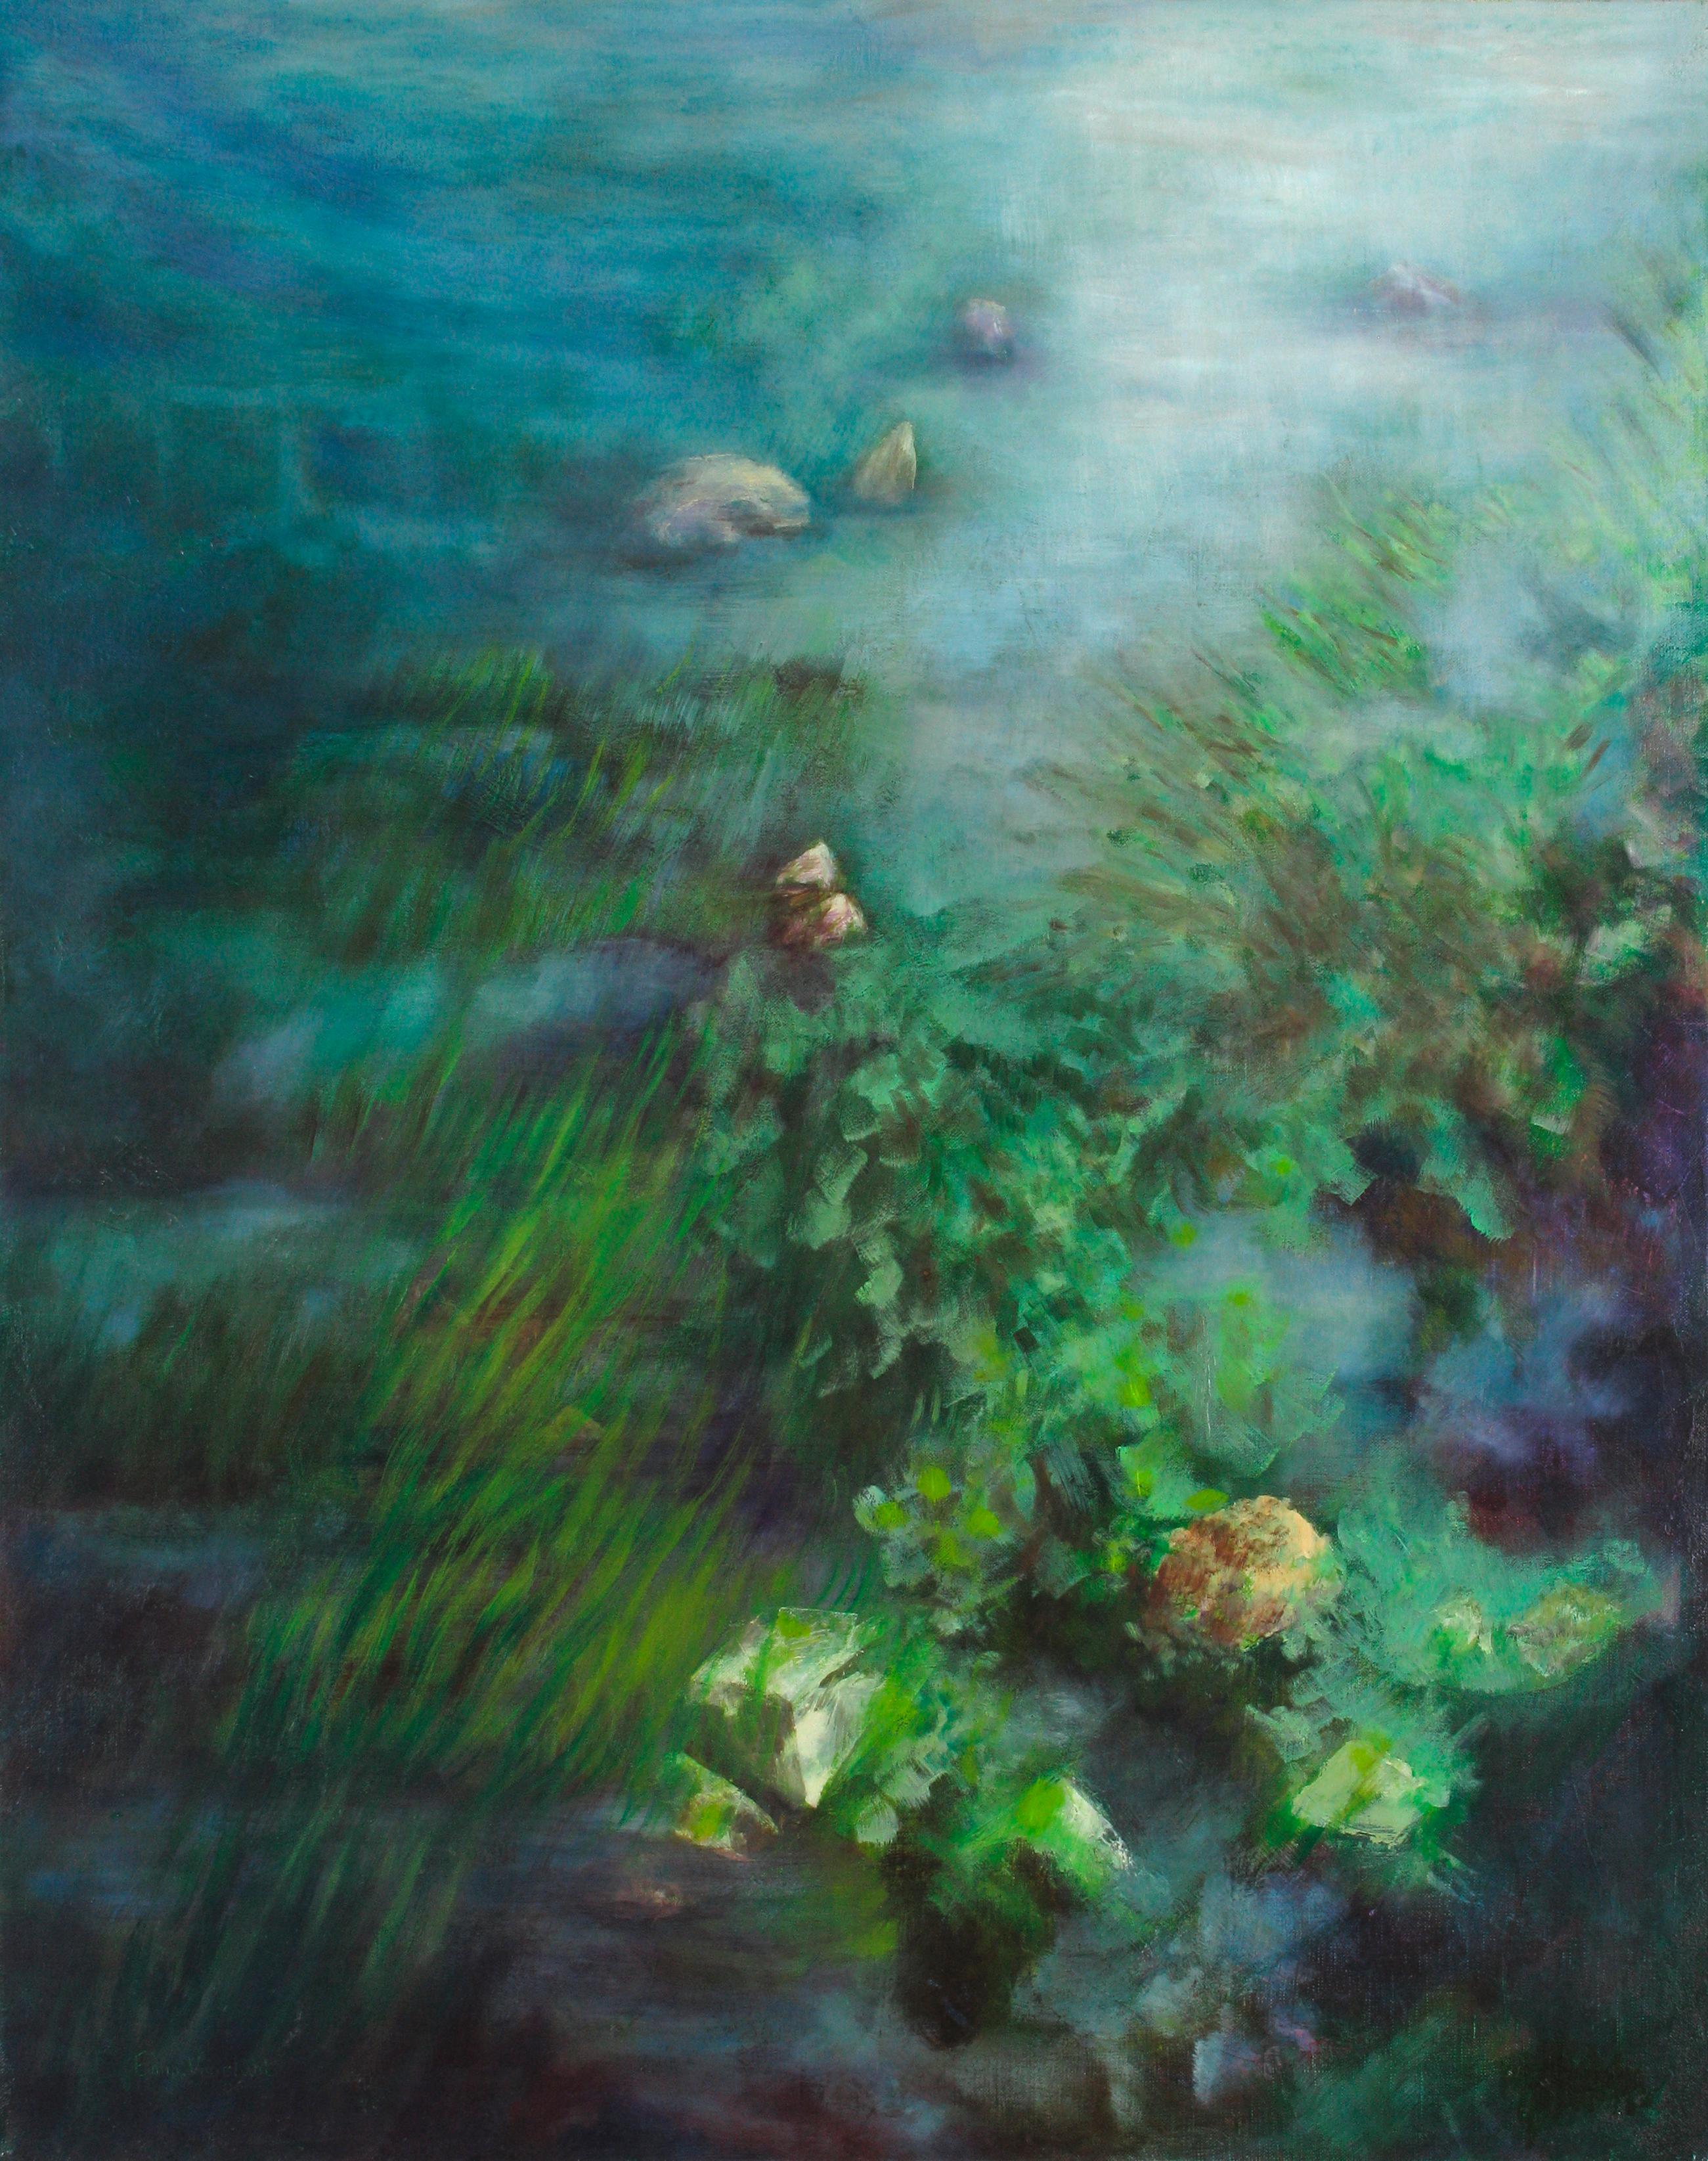  "Apaisement" peinture marine huile 92x72cm 2008 Emmanuelle Vroelant
Les algues coulent dans la transparence de l'eau. Le sentiment qu'ils sont là depuis si longtemps....